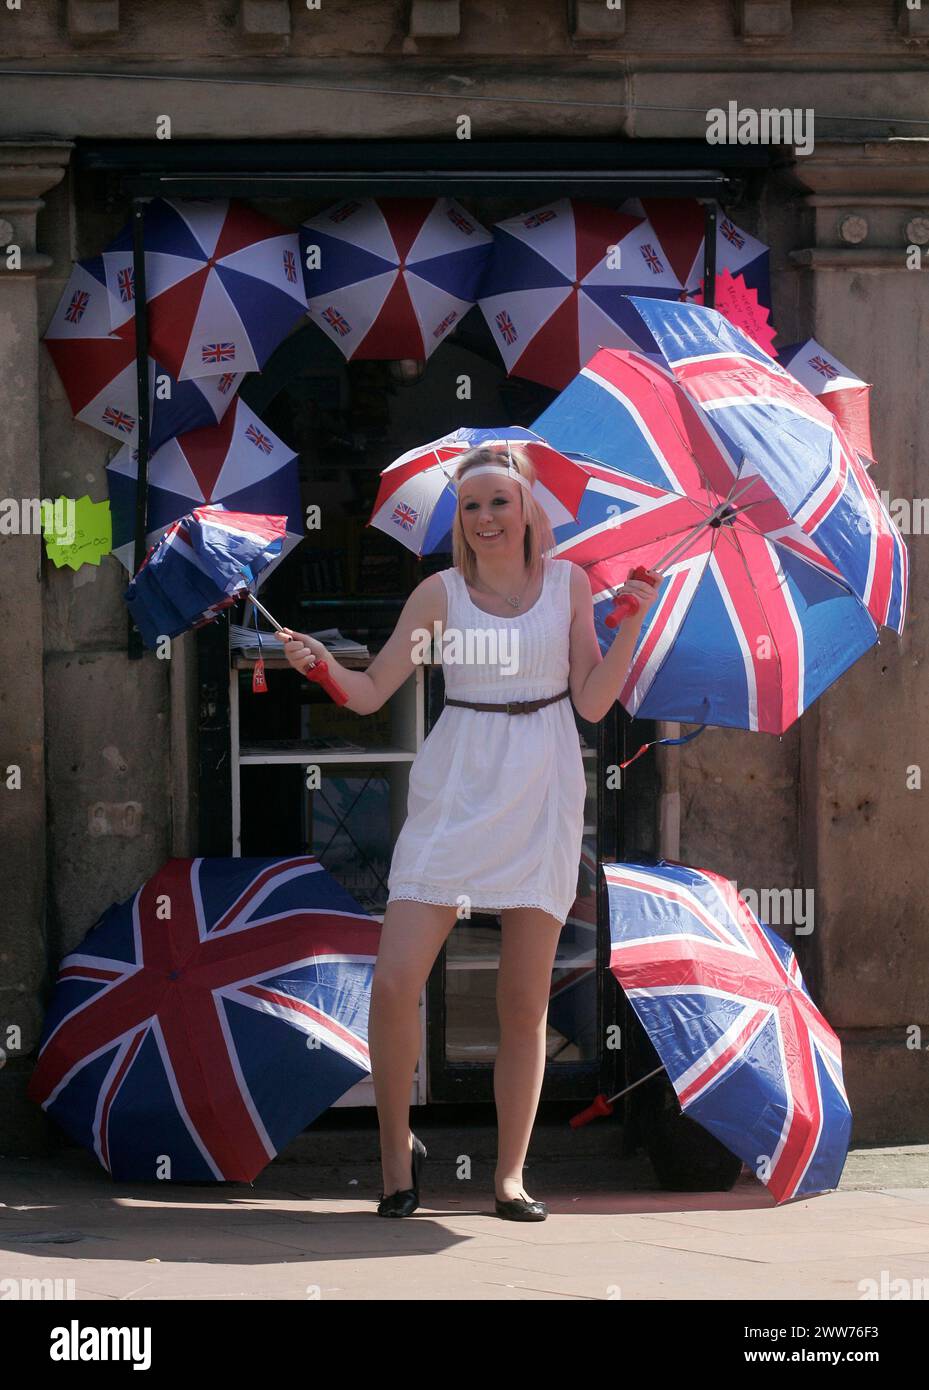 27/04/11. ..avec une probabilité de 60% de prévisions de pluie pour vendredi, Sarah Bean (20 ans) a une journée chargée au soleil vendant des parapluies union jack à Utto Banque D'Images